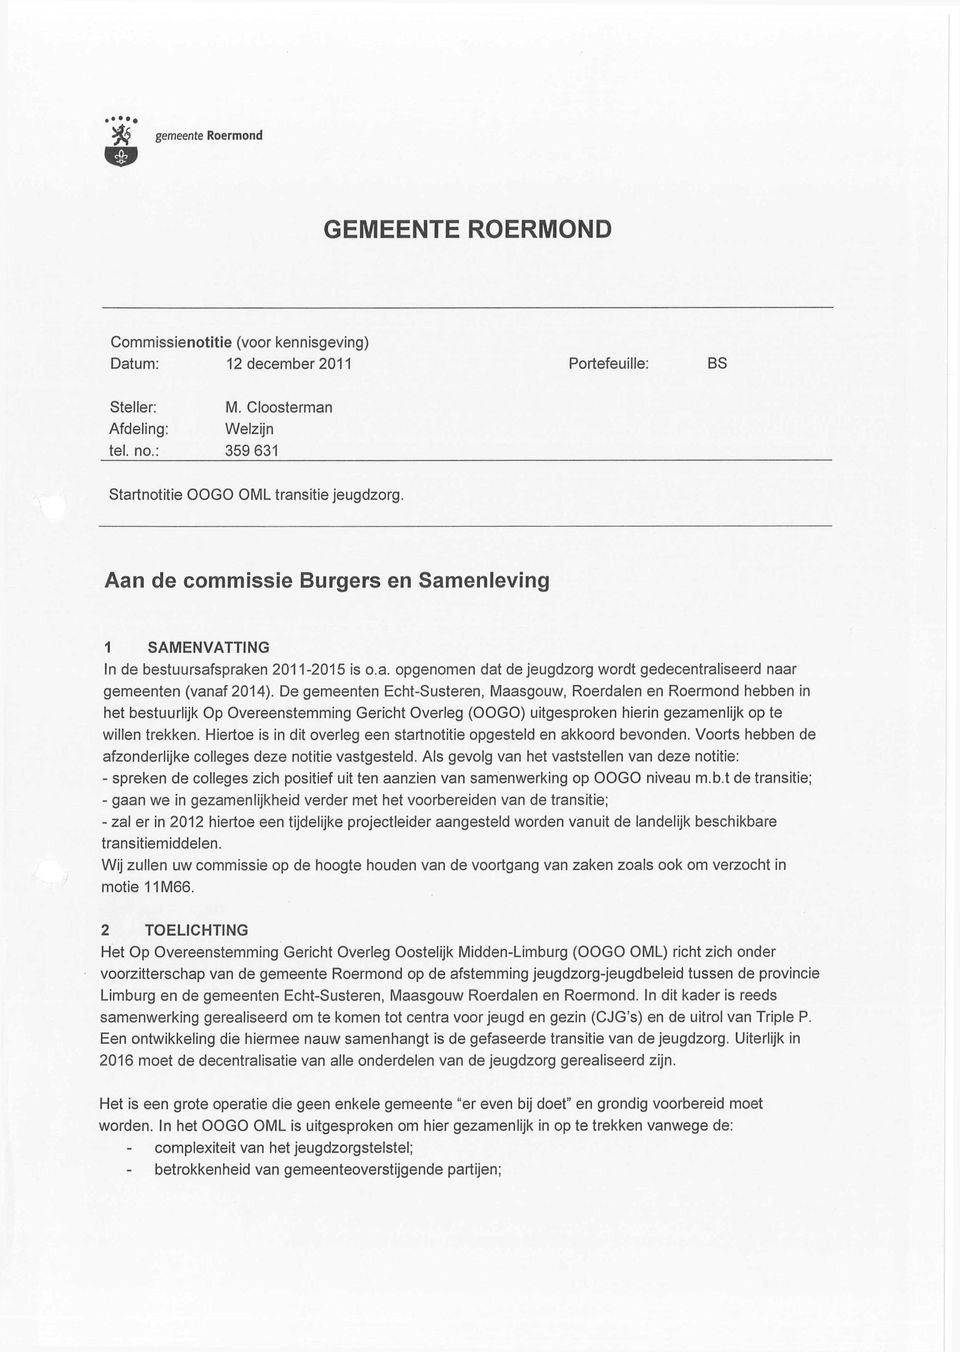 De gemeenten Echt-Susteren, Maasgouw, Roerdalen en Roermond hebben in het bestuudijk Op Overeenstemming Gericht Overleg (OOGO) uitgesproken hierin gezamenlijk op te willen trekken.